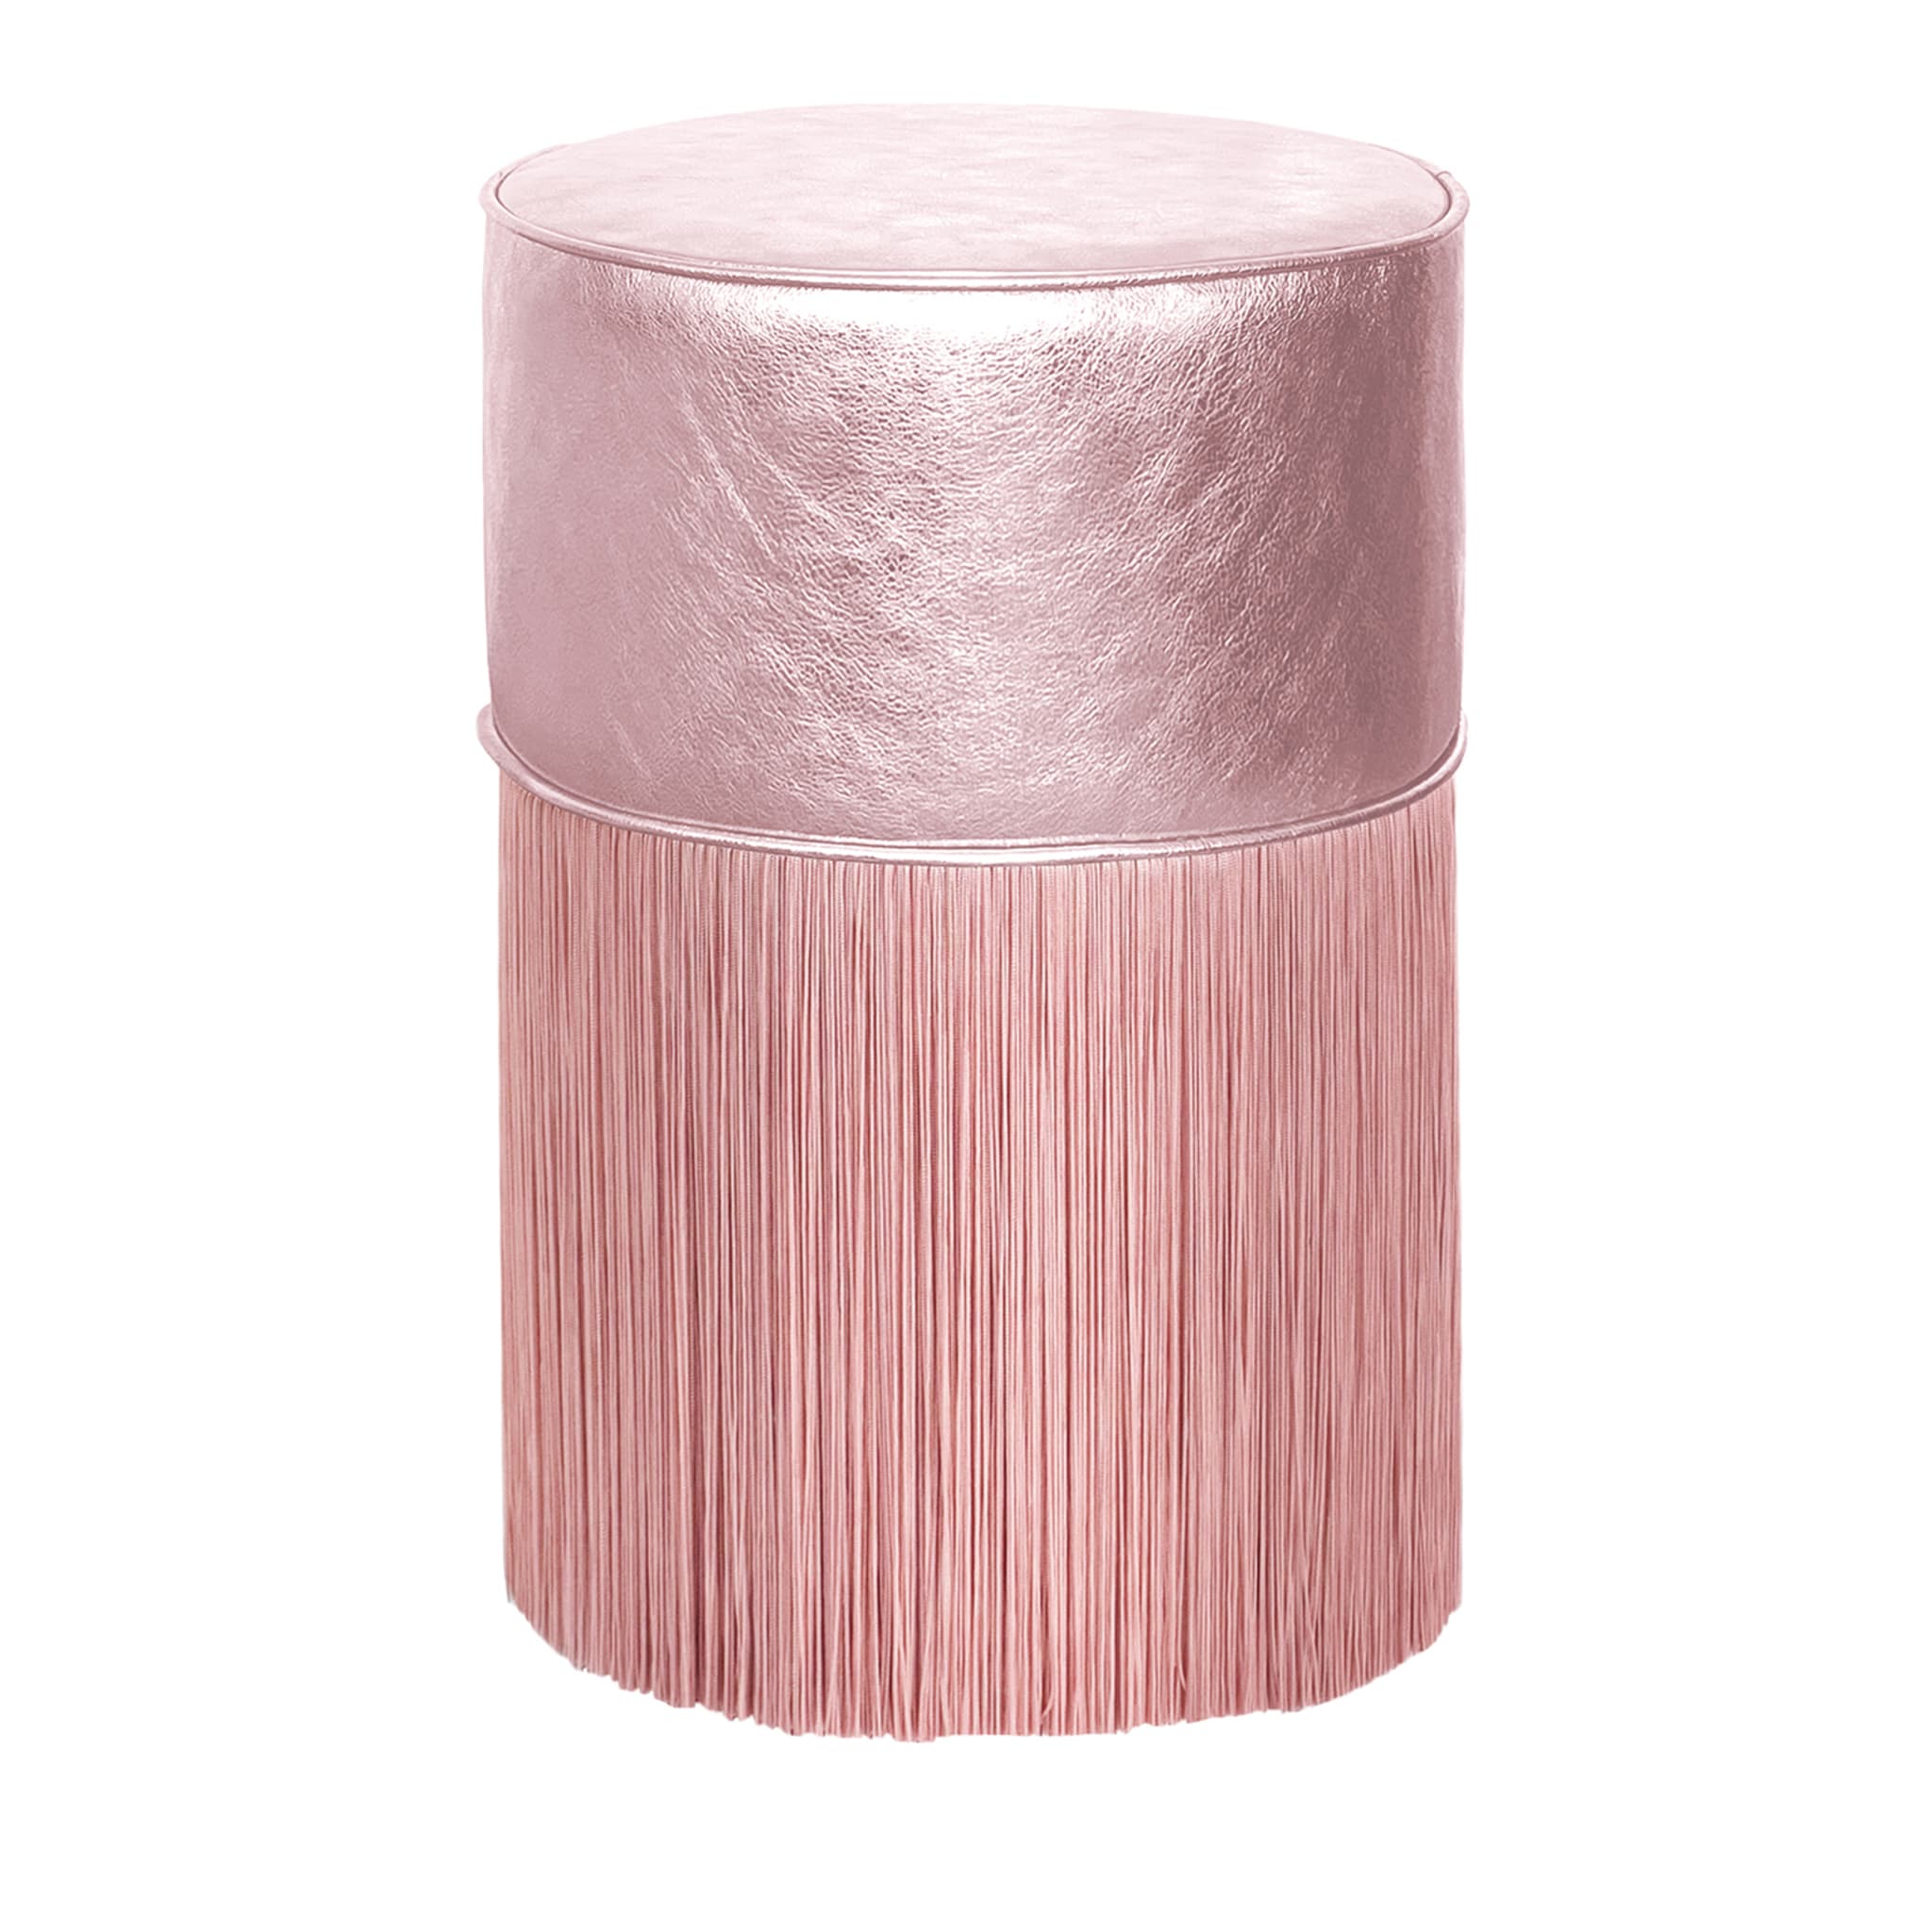 Puf de piel metalizada rosa claro brillante de Lorenza Bozzoli - Vista principal